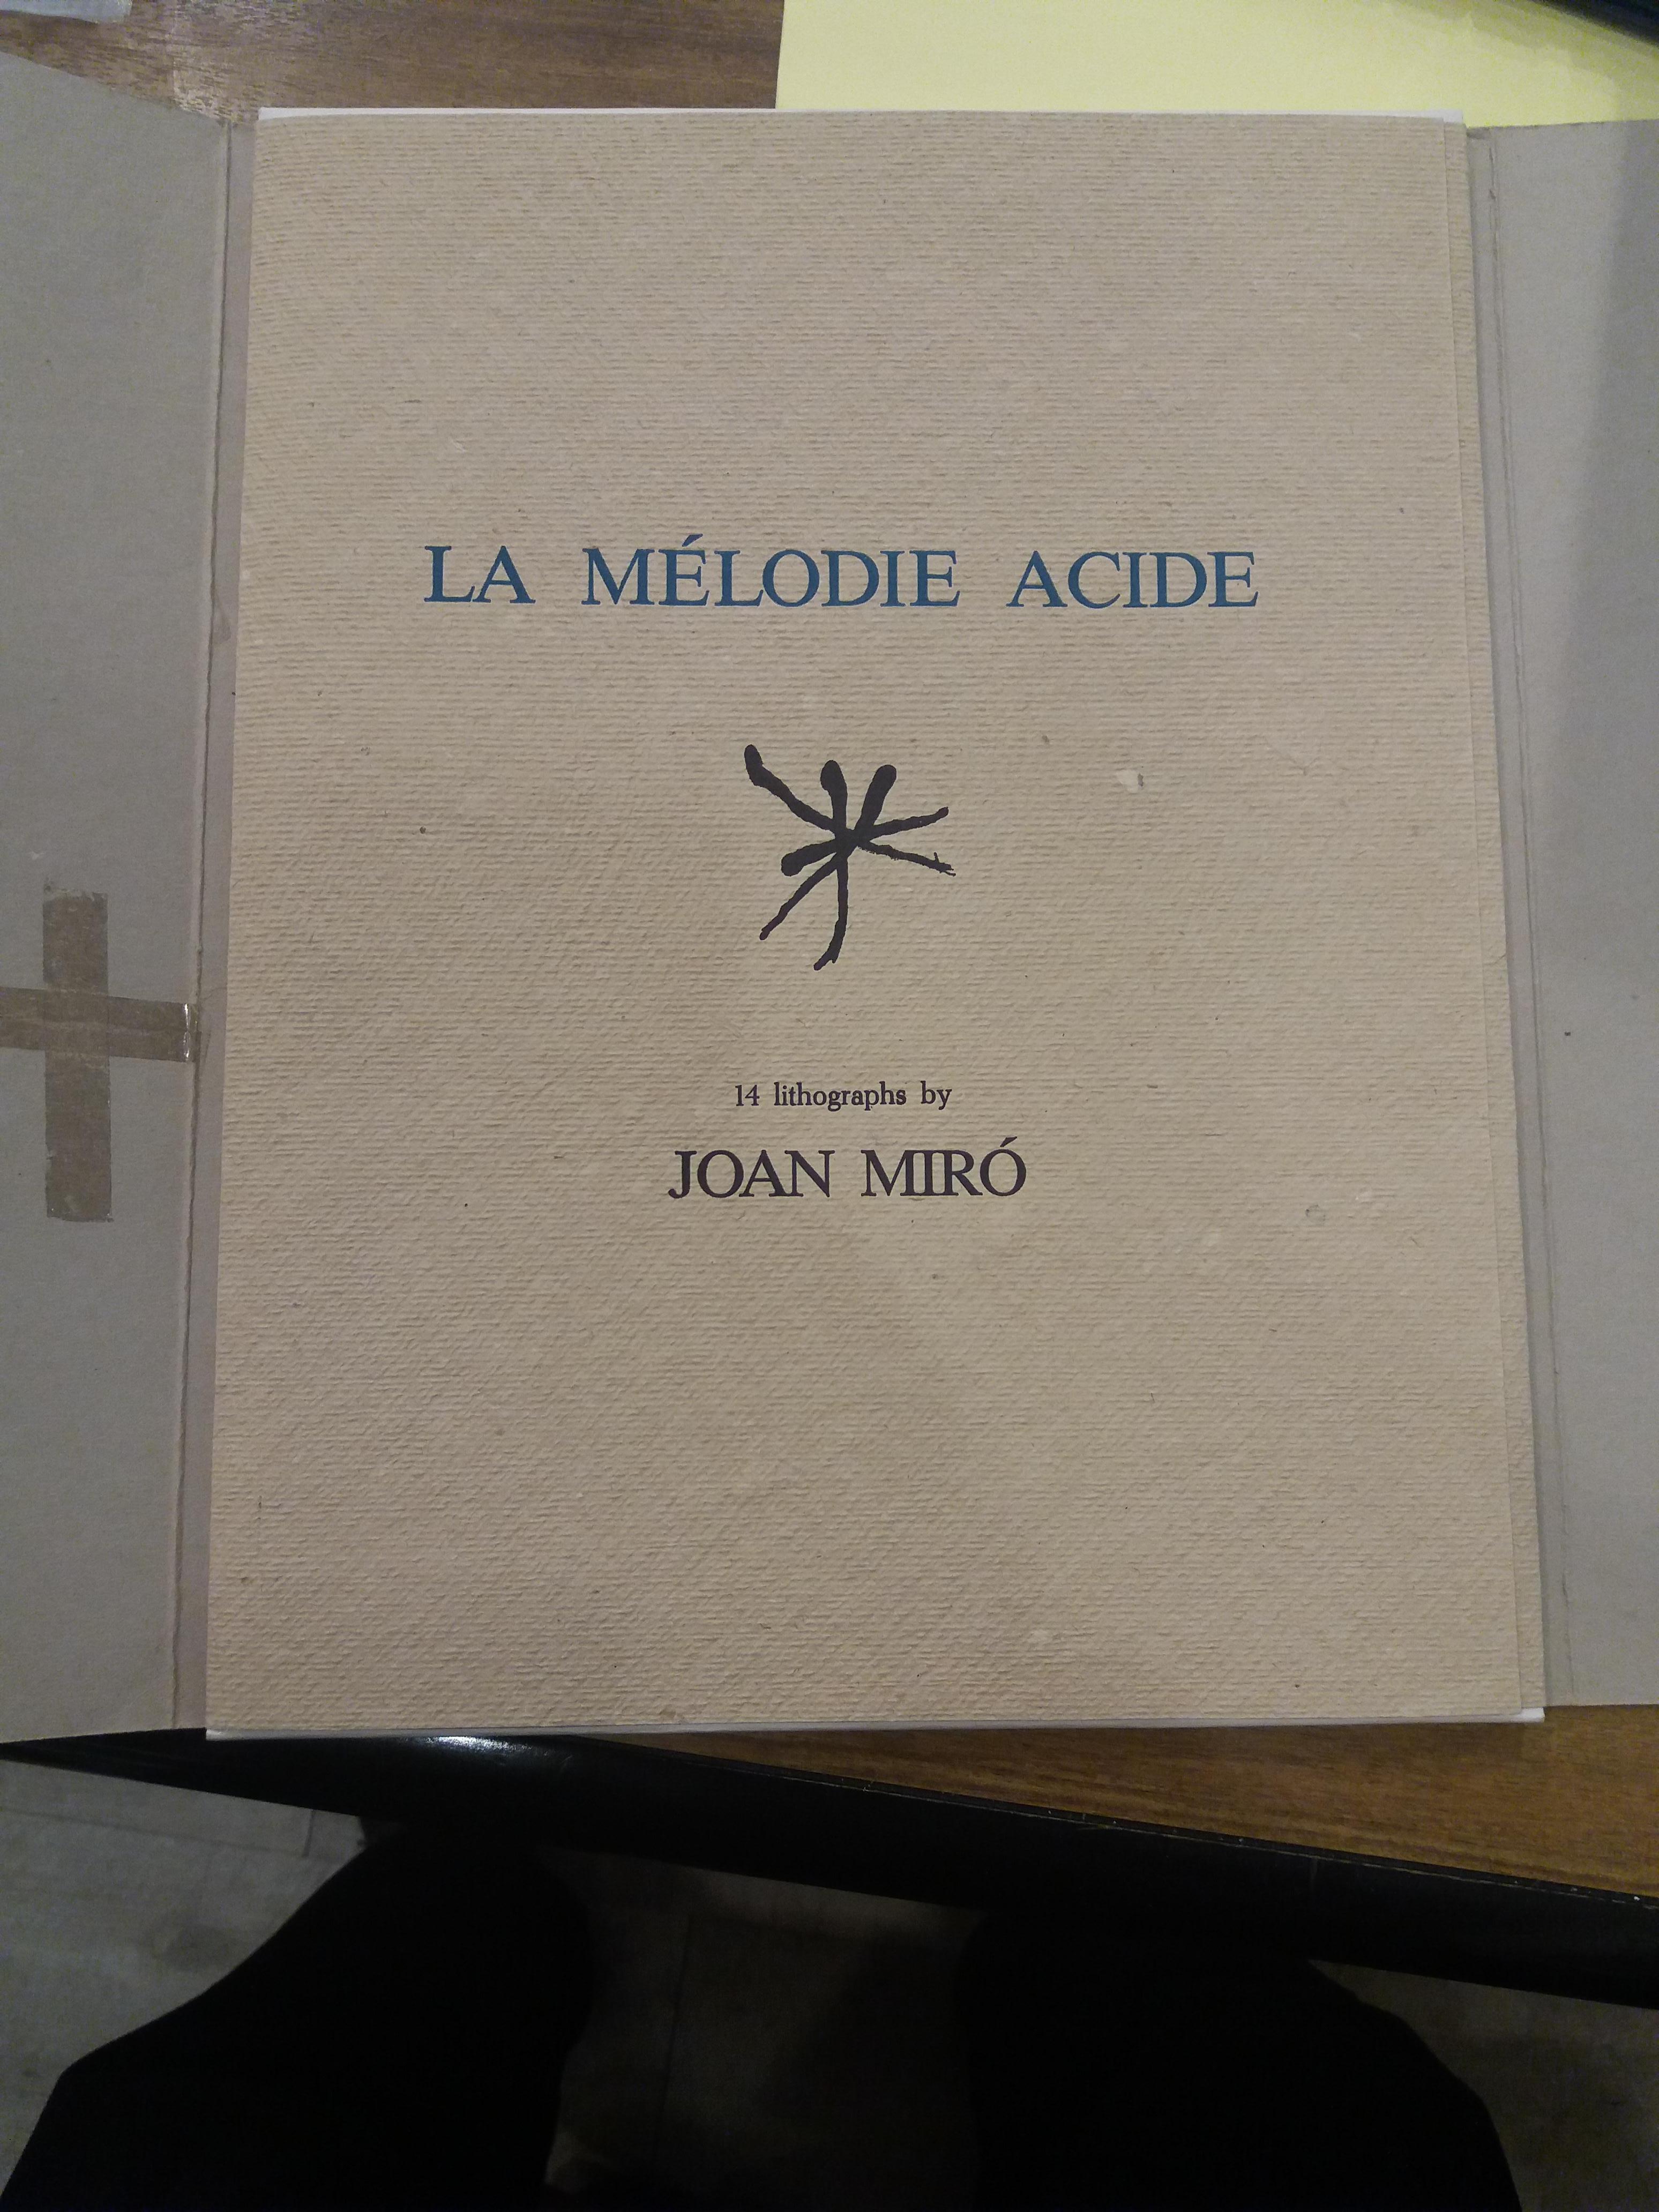 Miro  37  La melodie acide. lithograph - Print by Joan Miró